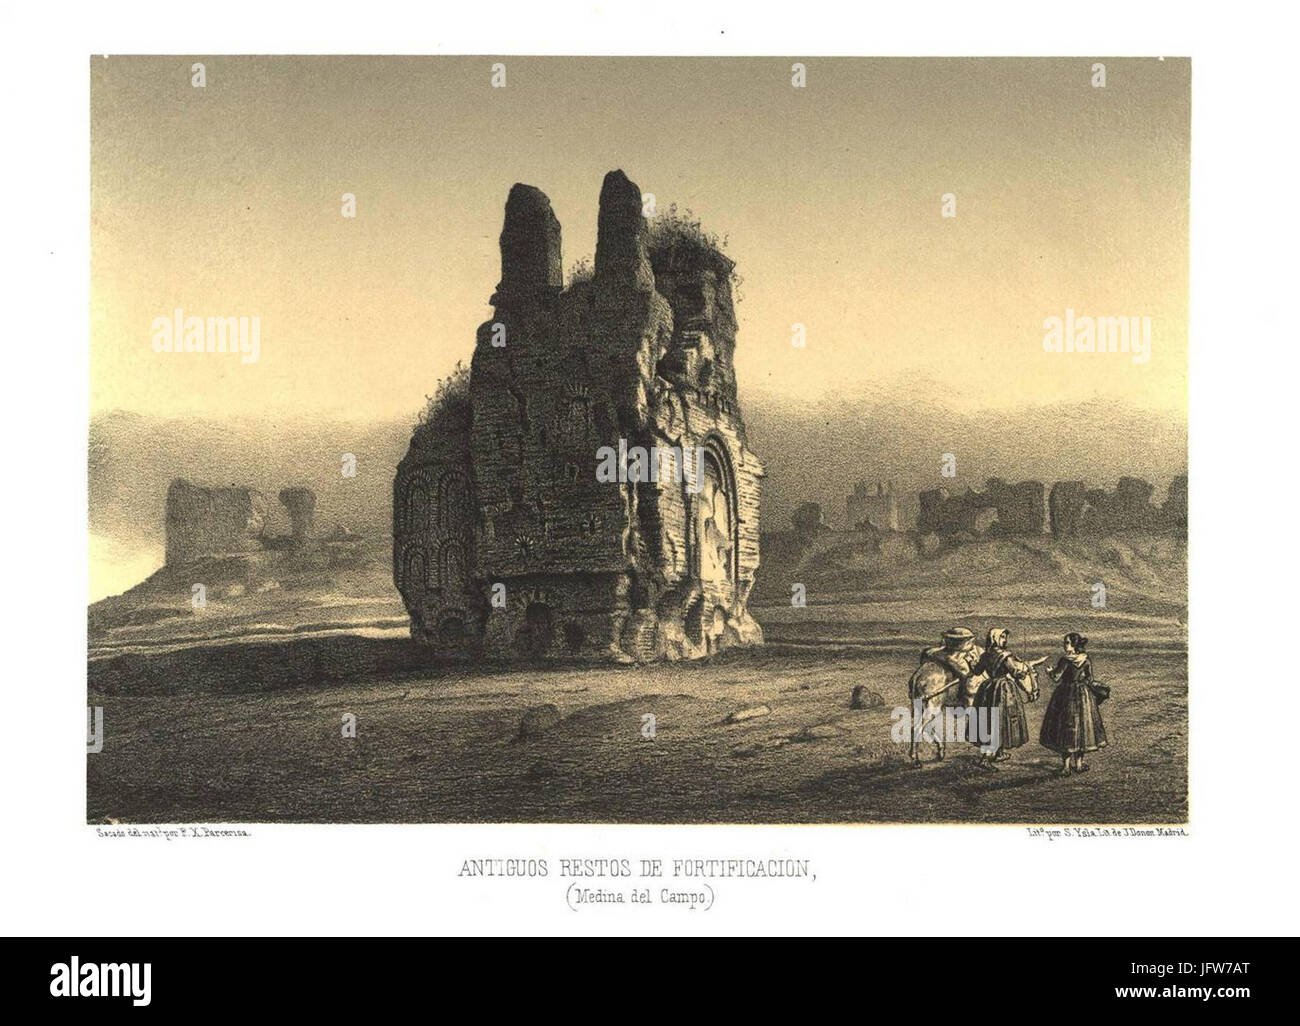 Antiguos restos de fortificación (Medina del Campo) (1861) - Parcerisa, F. J. Stock Photo